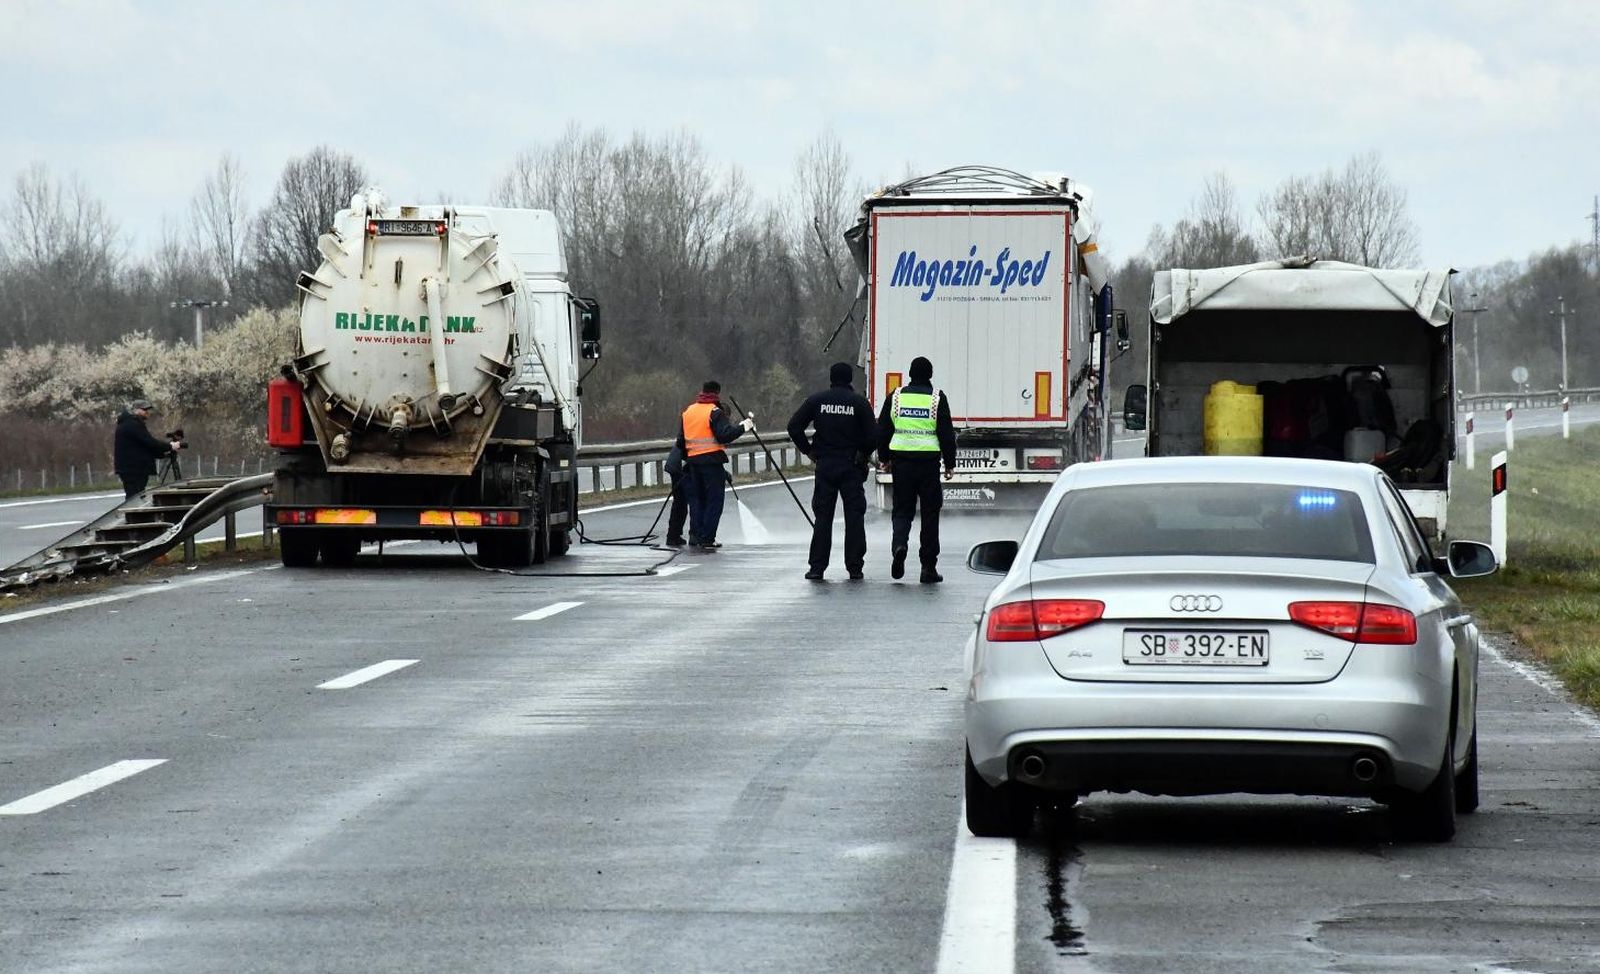 22.03.2021., Okucani - U prevrtanju kamiona srbijanskih registarskih oznaka cetvero ljudi je poginulo. Photo: Ivica Galovic/PIXSELL